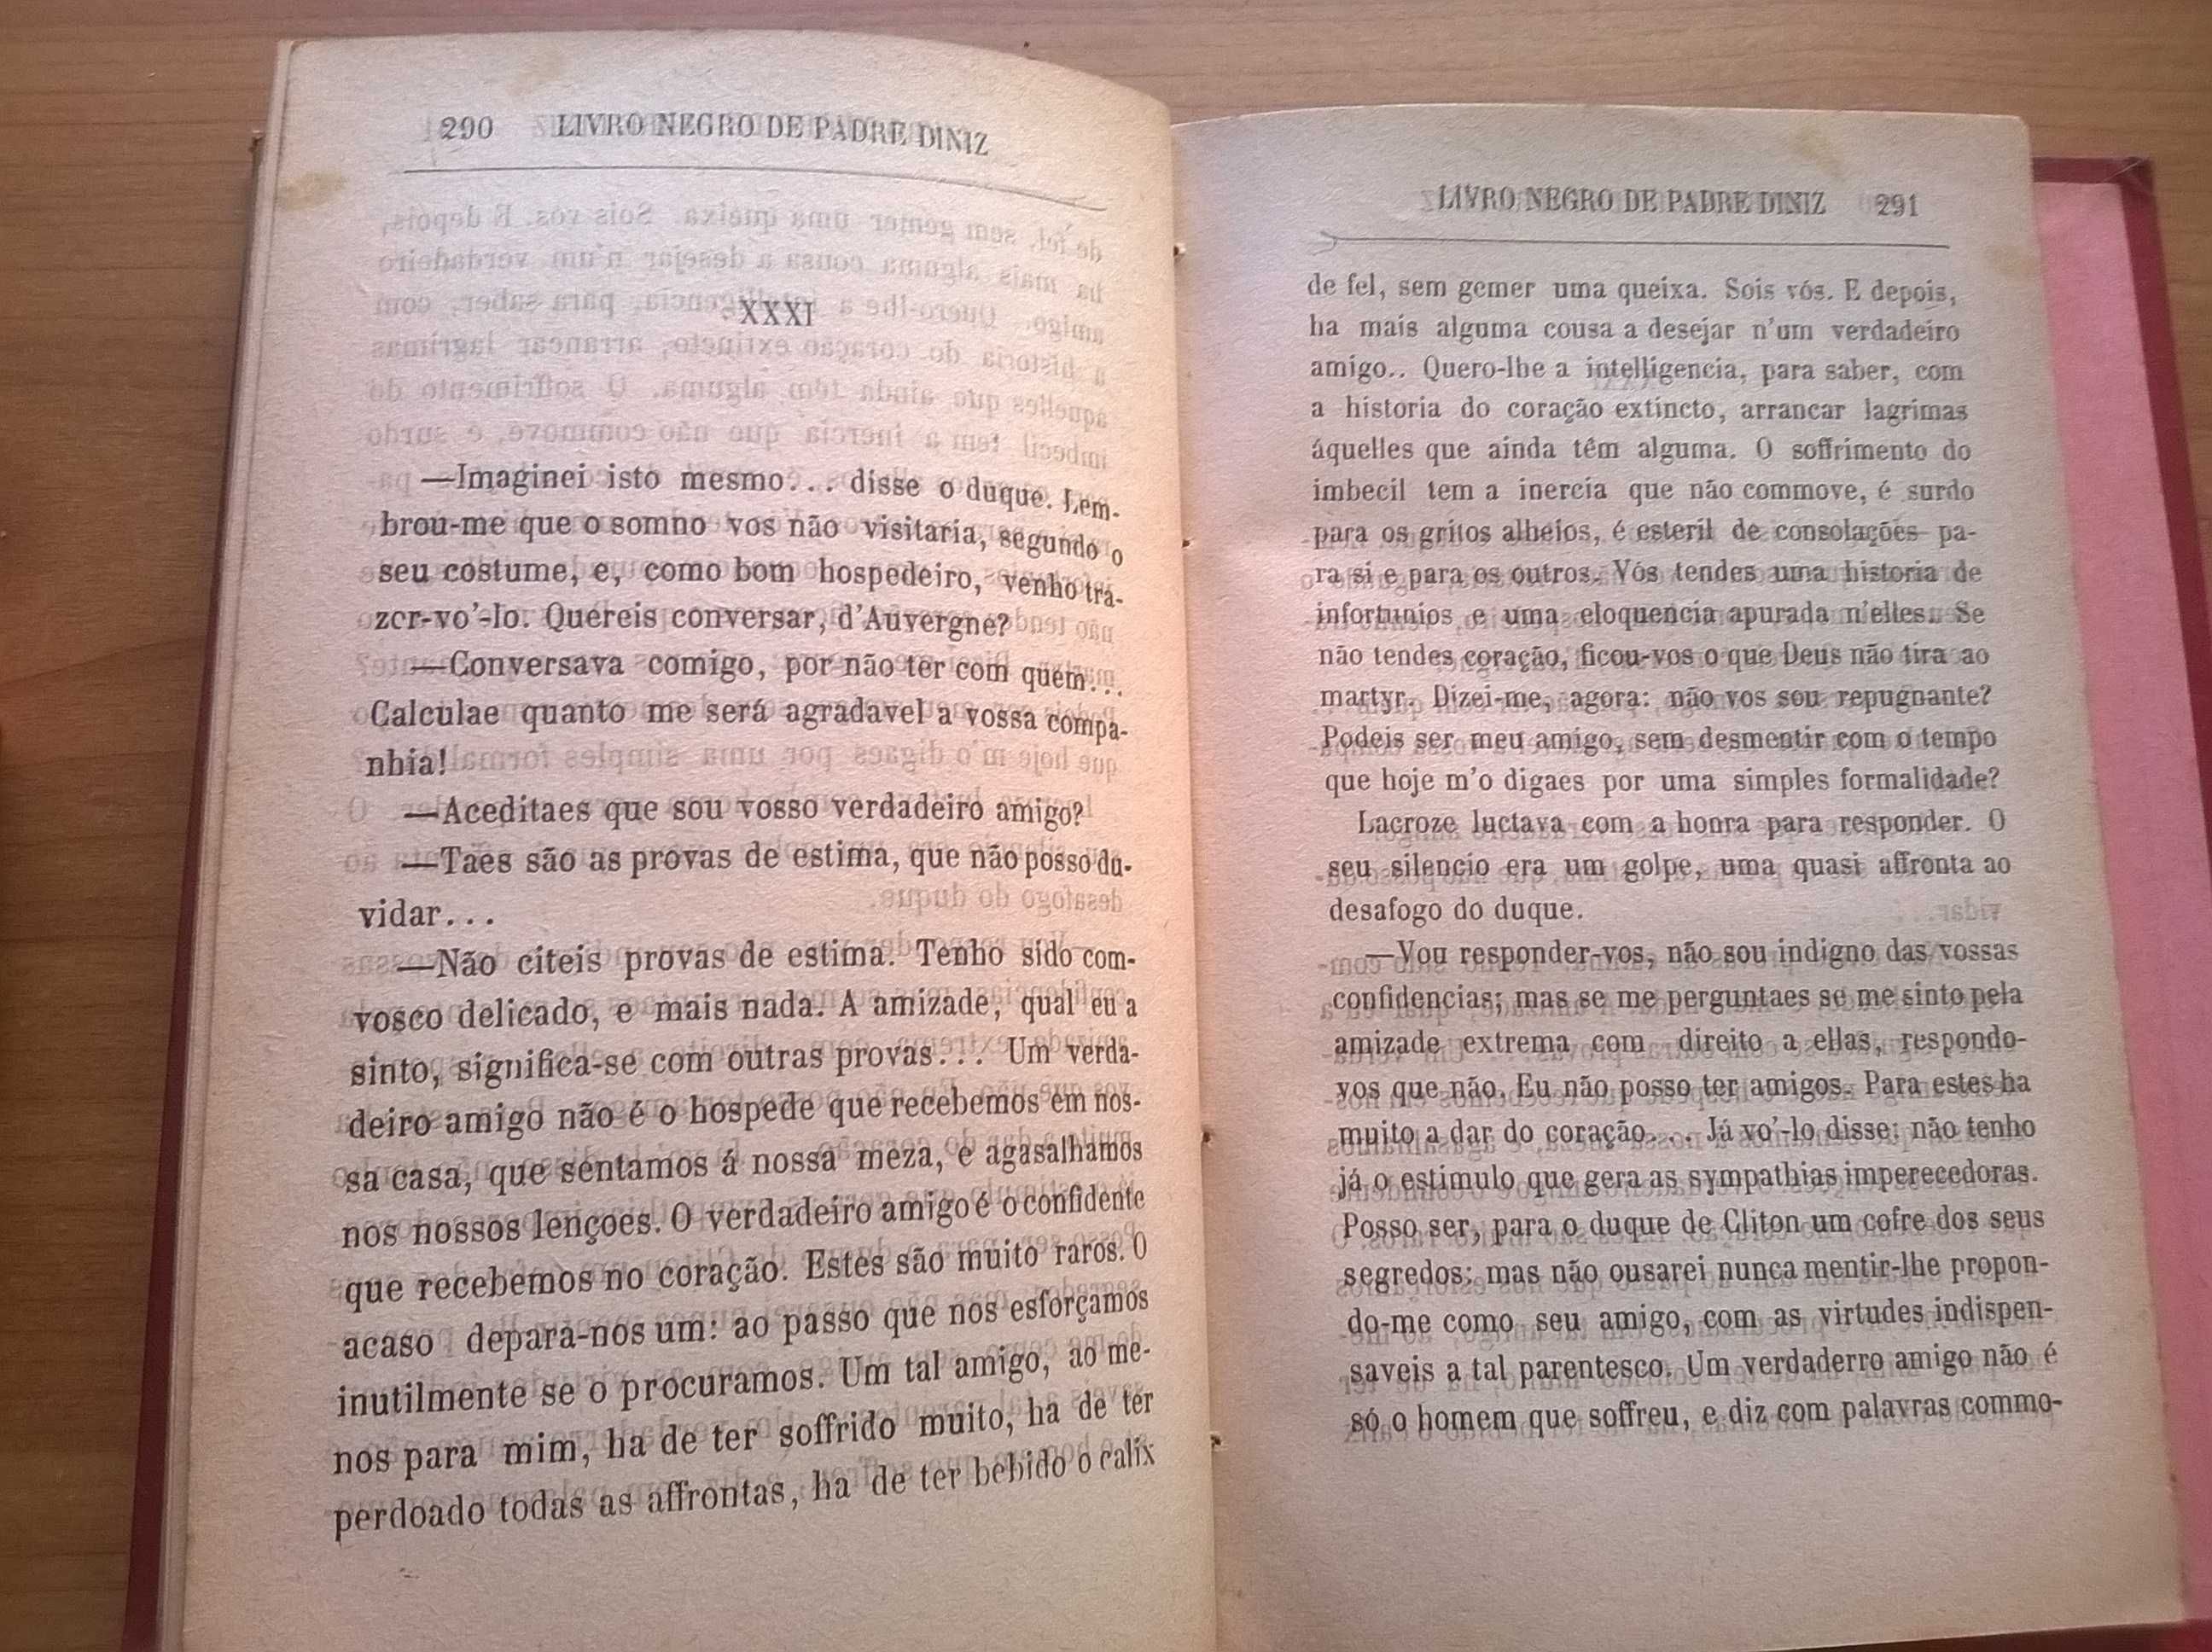 O Livro Negro do Padre Diniz - Camilo Castelo Branco